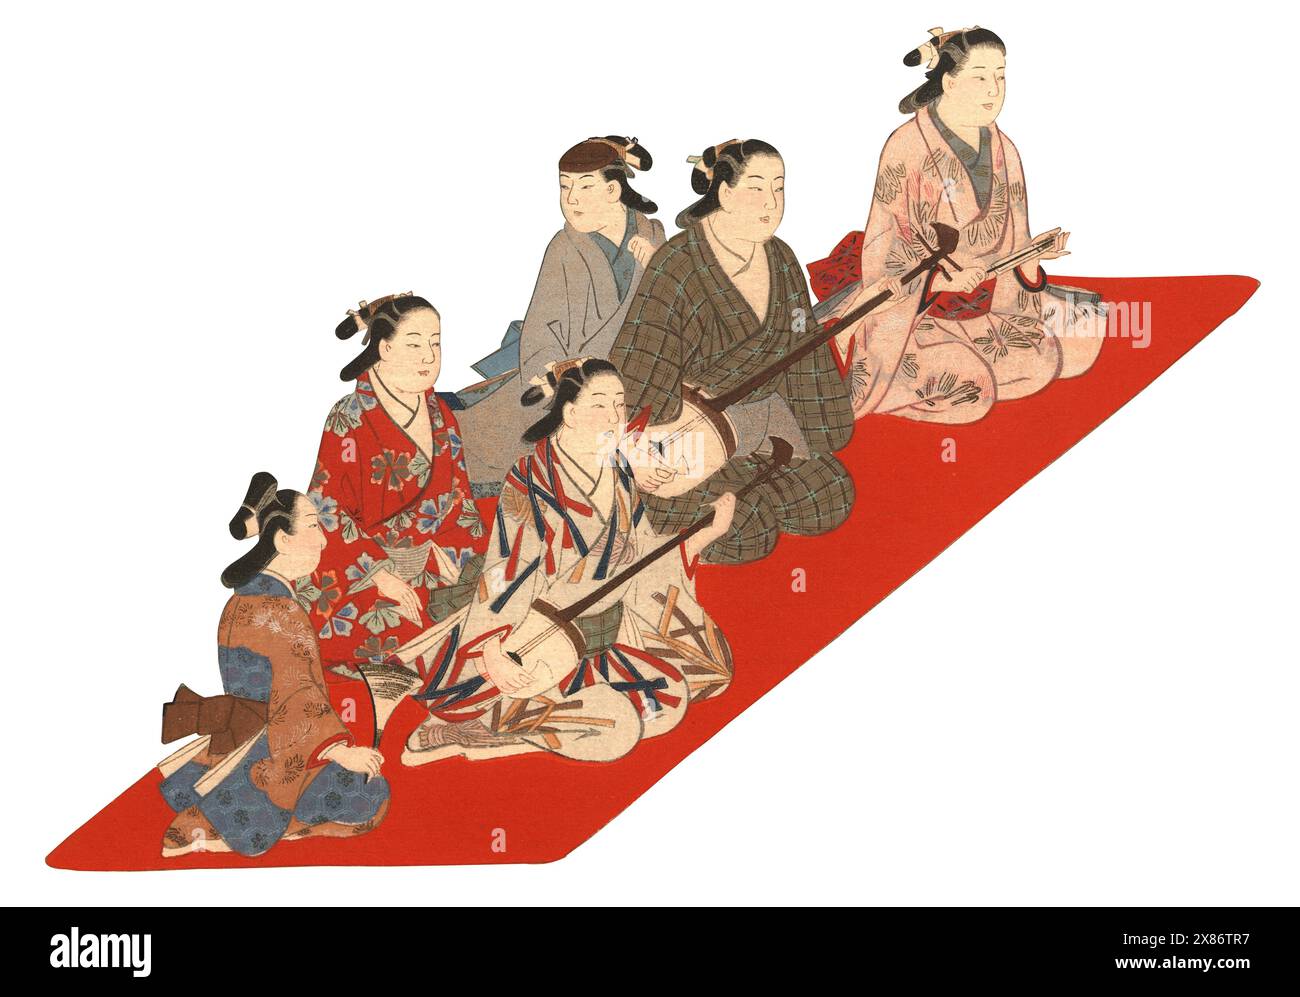 Traditioneller japanischer Holzschnitt einer Gruppe von Musikern am Hof, die auf einem roten Teppich sitzen und auf weiß Schamisen- und Koto-Instrumenten spielen. Stockfoto